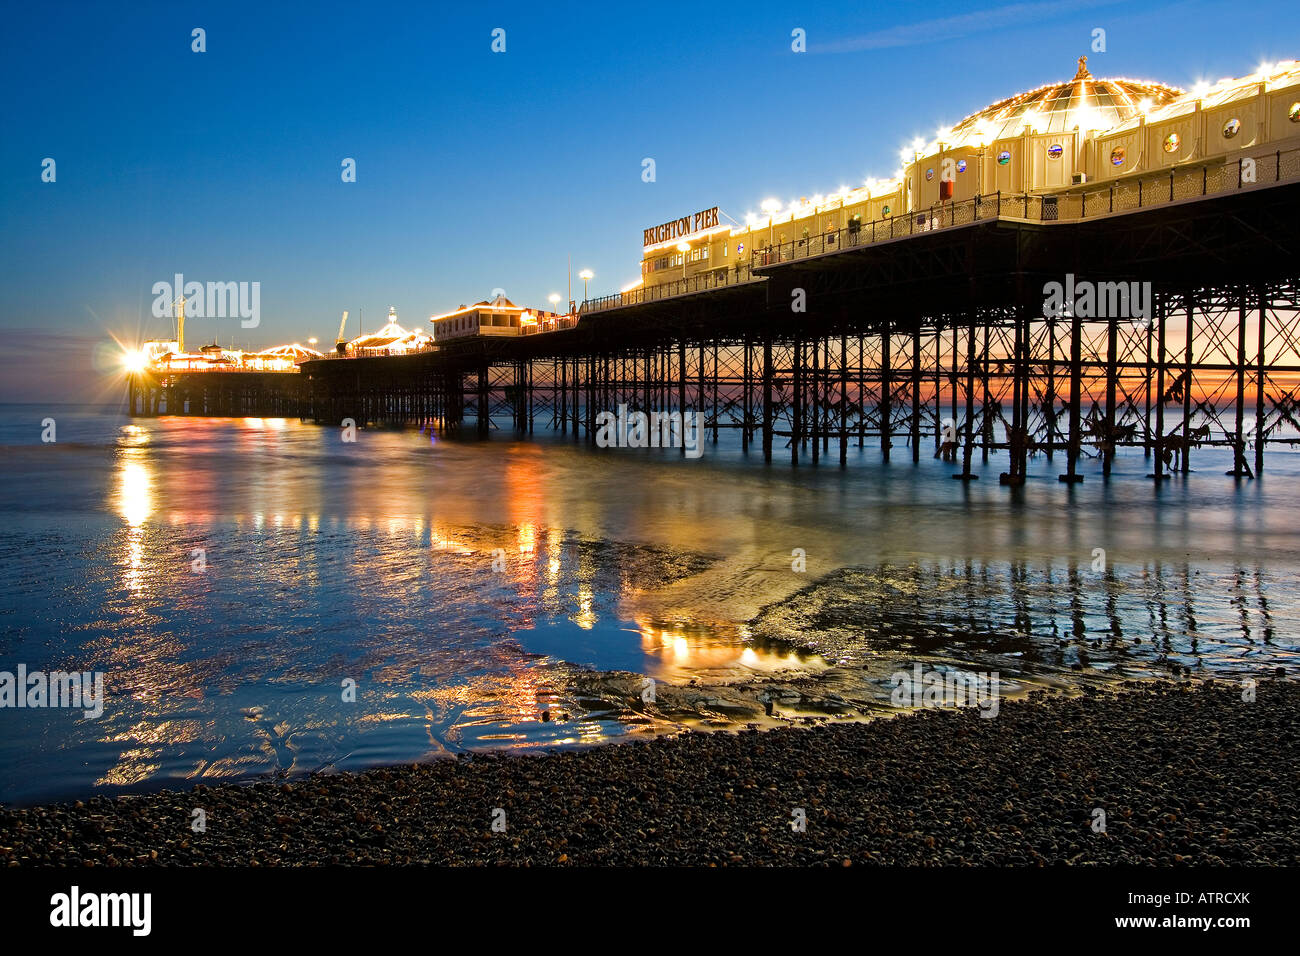 Il Brighton Pier in condizioni di scarsa luce al tramonto con luci colorate sul molo riflettendo in mare e sulla spiaggia di ciottoli in primo piano Foto Stock